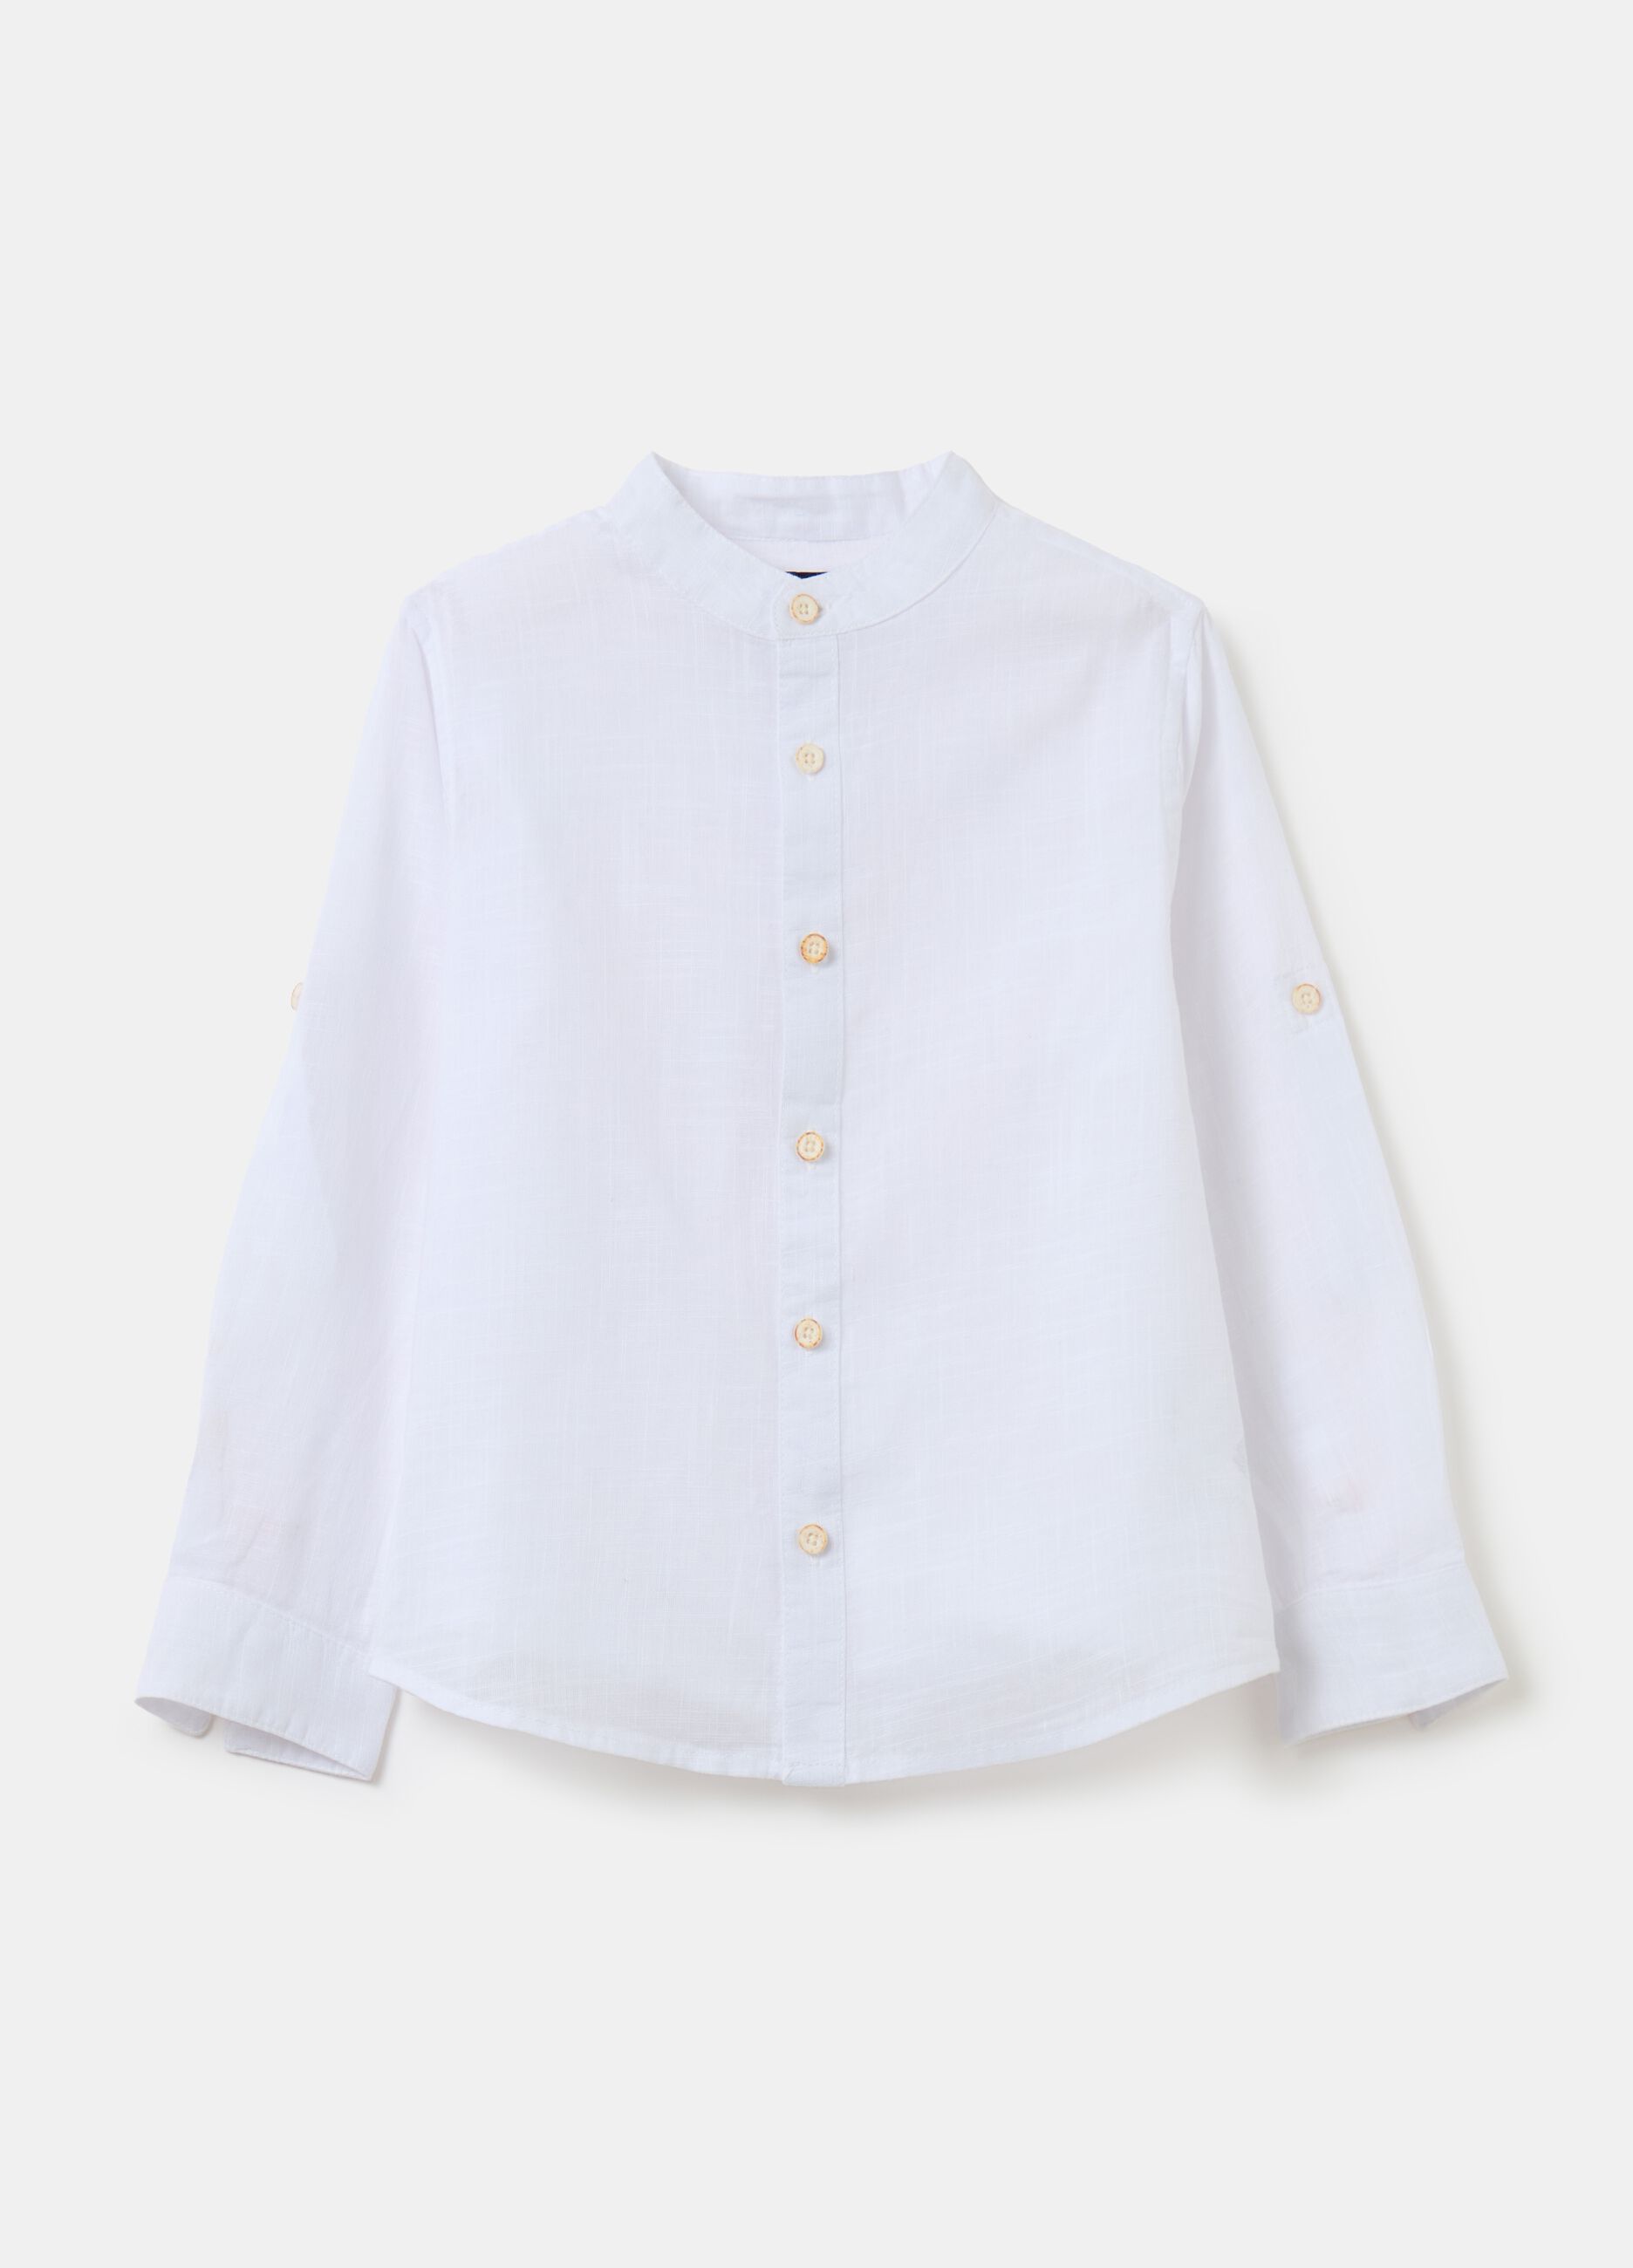 Cotton shirt with Mandarin collar